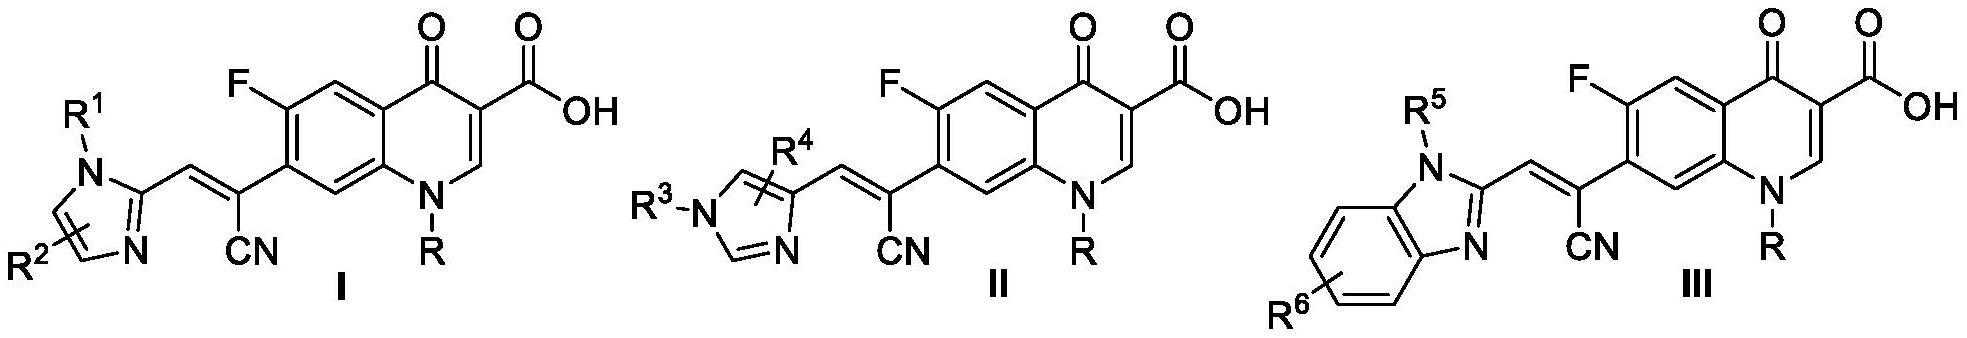 氰乙烯桥联的喹诺酮咪唑类及其类似物的制备方法和医药应用